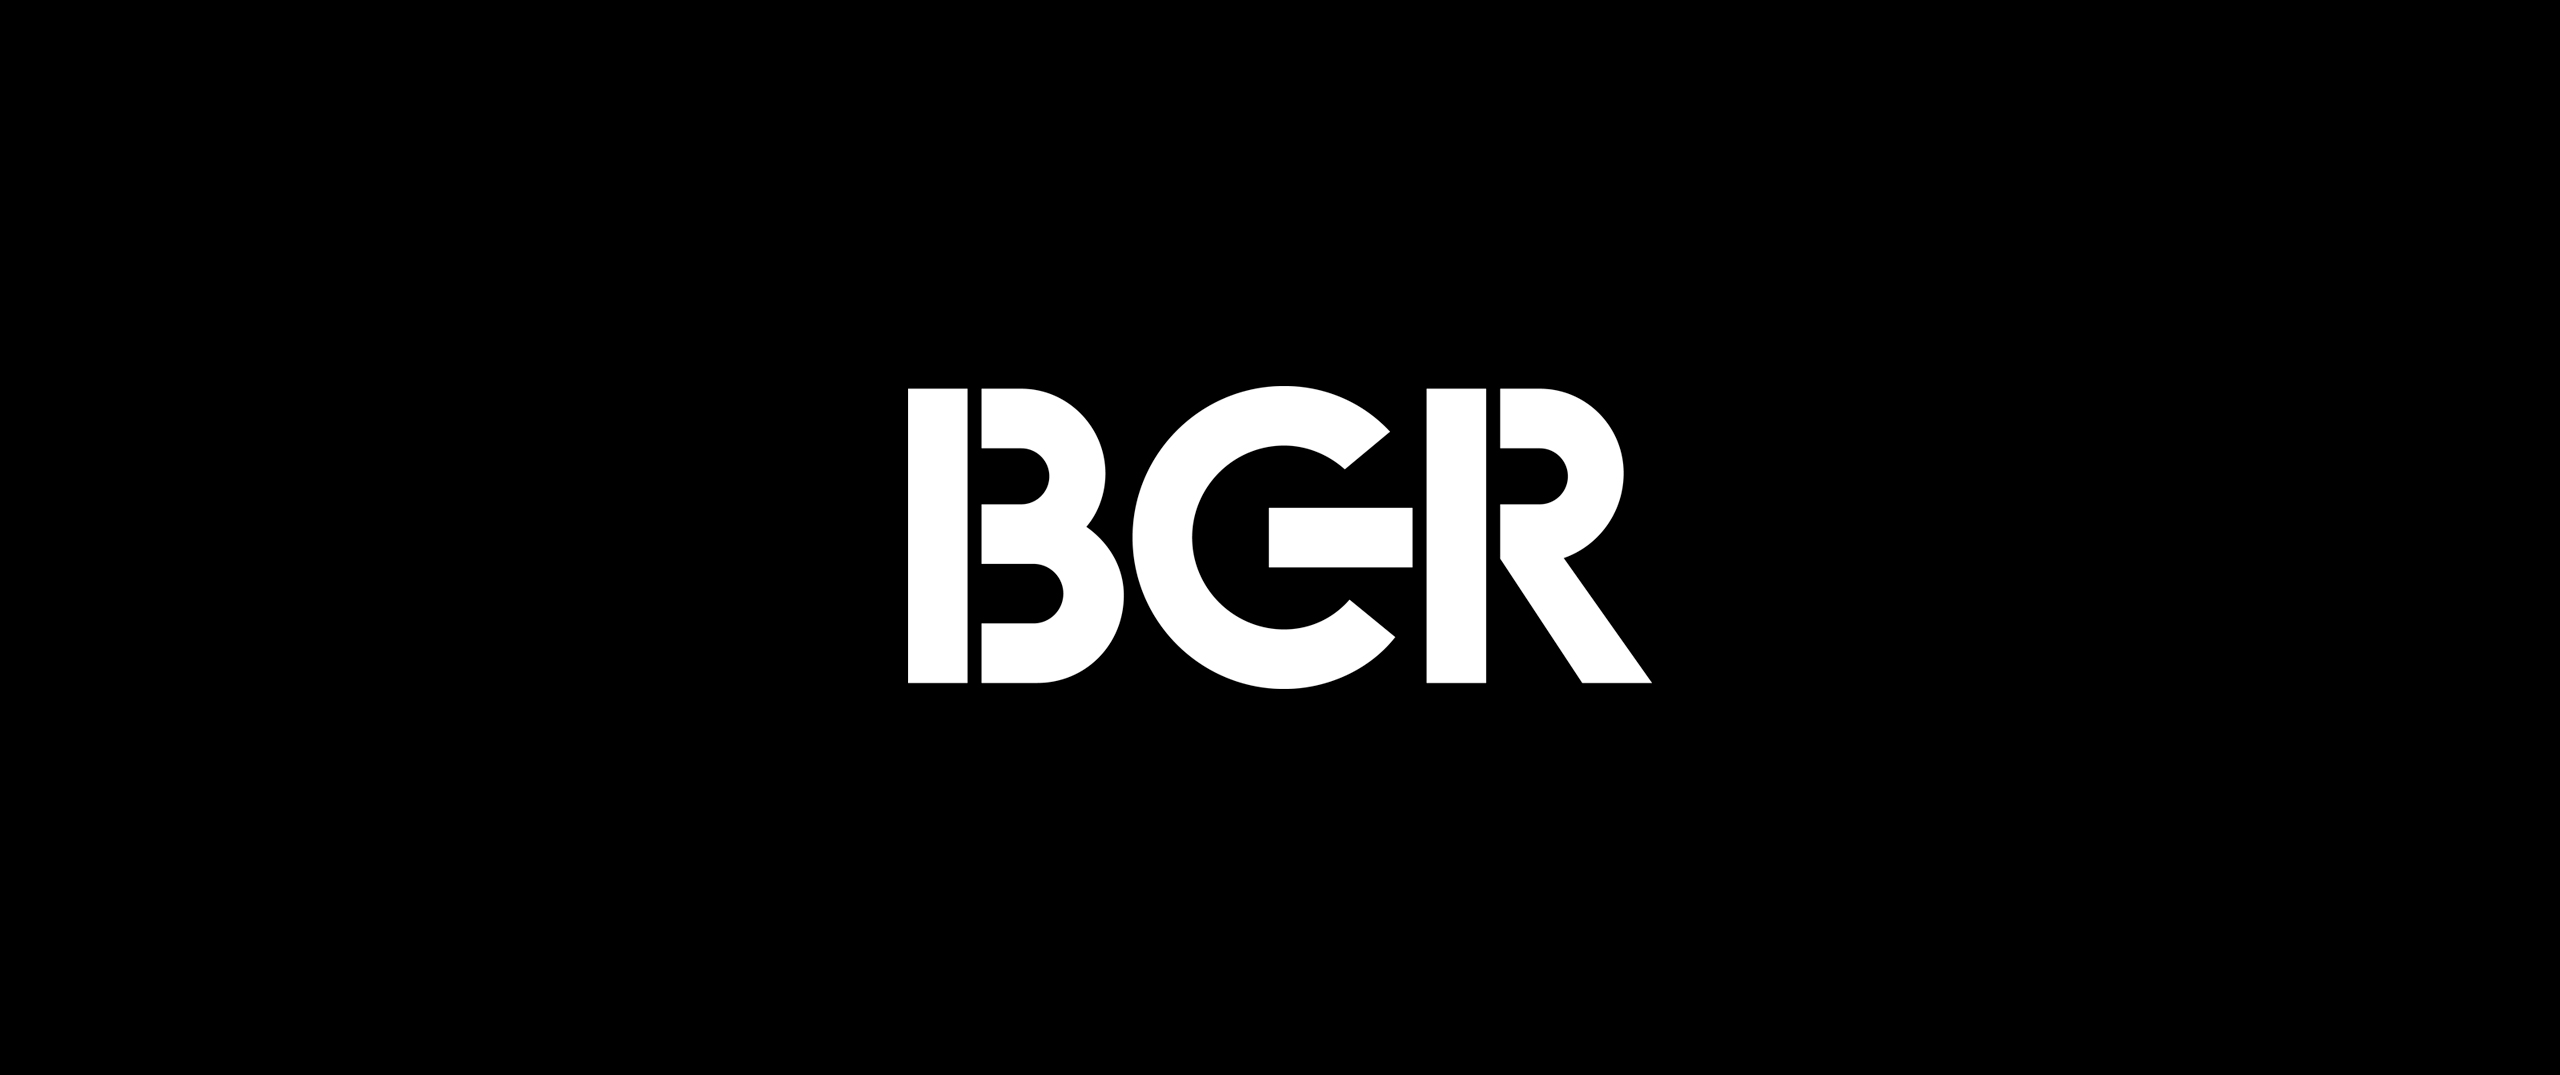 Todd Logo - Todd Haselton – BGR